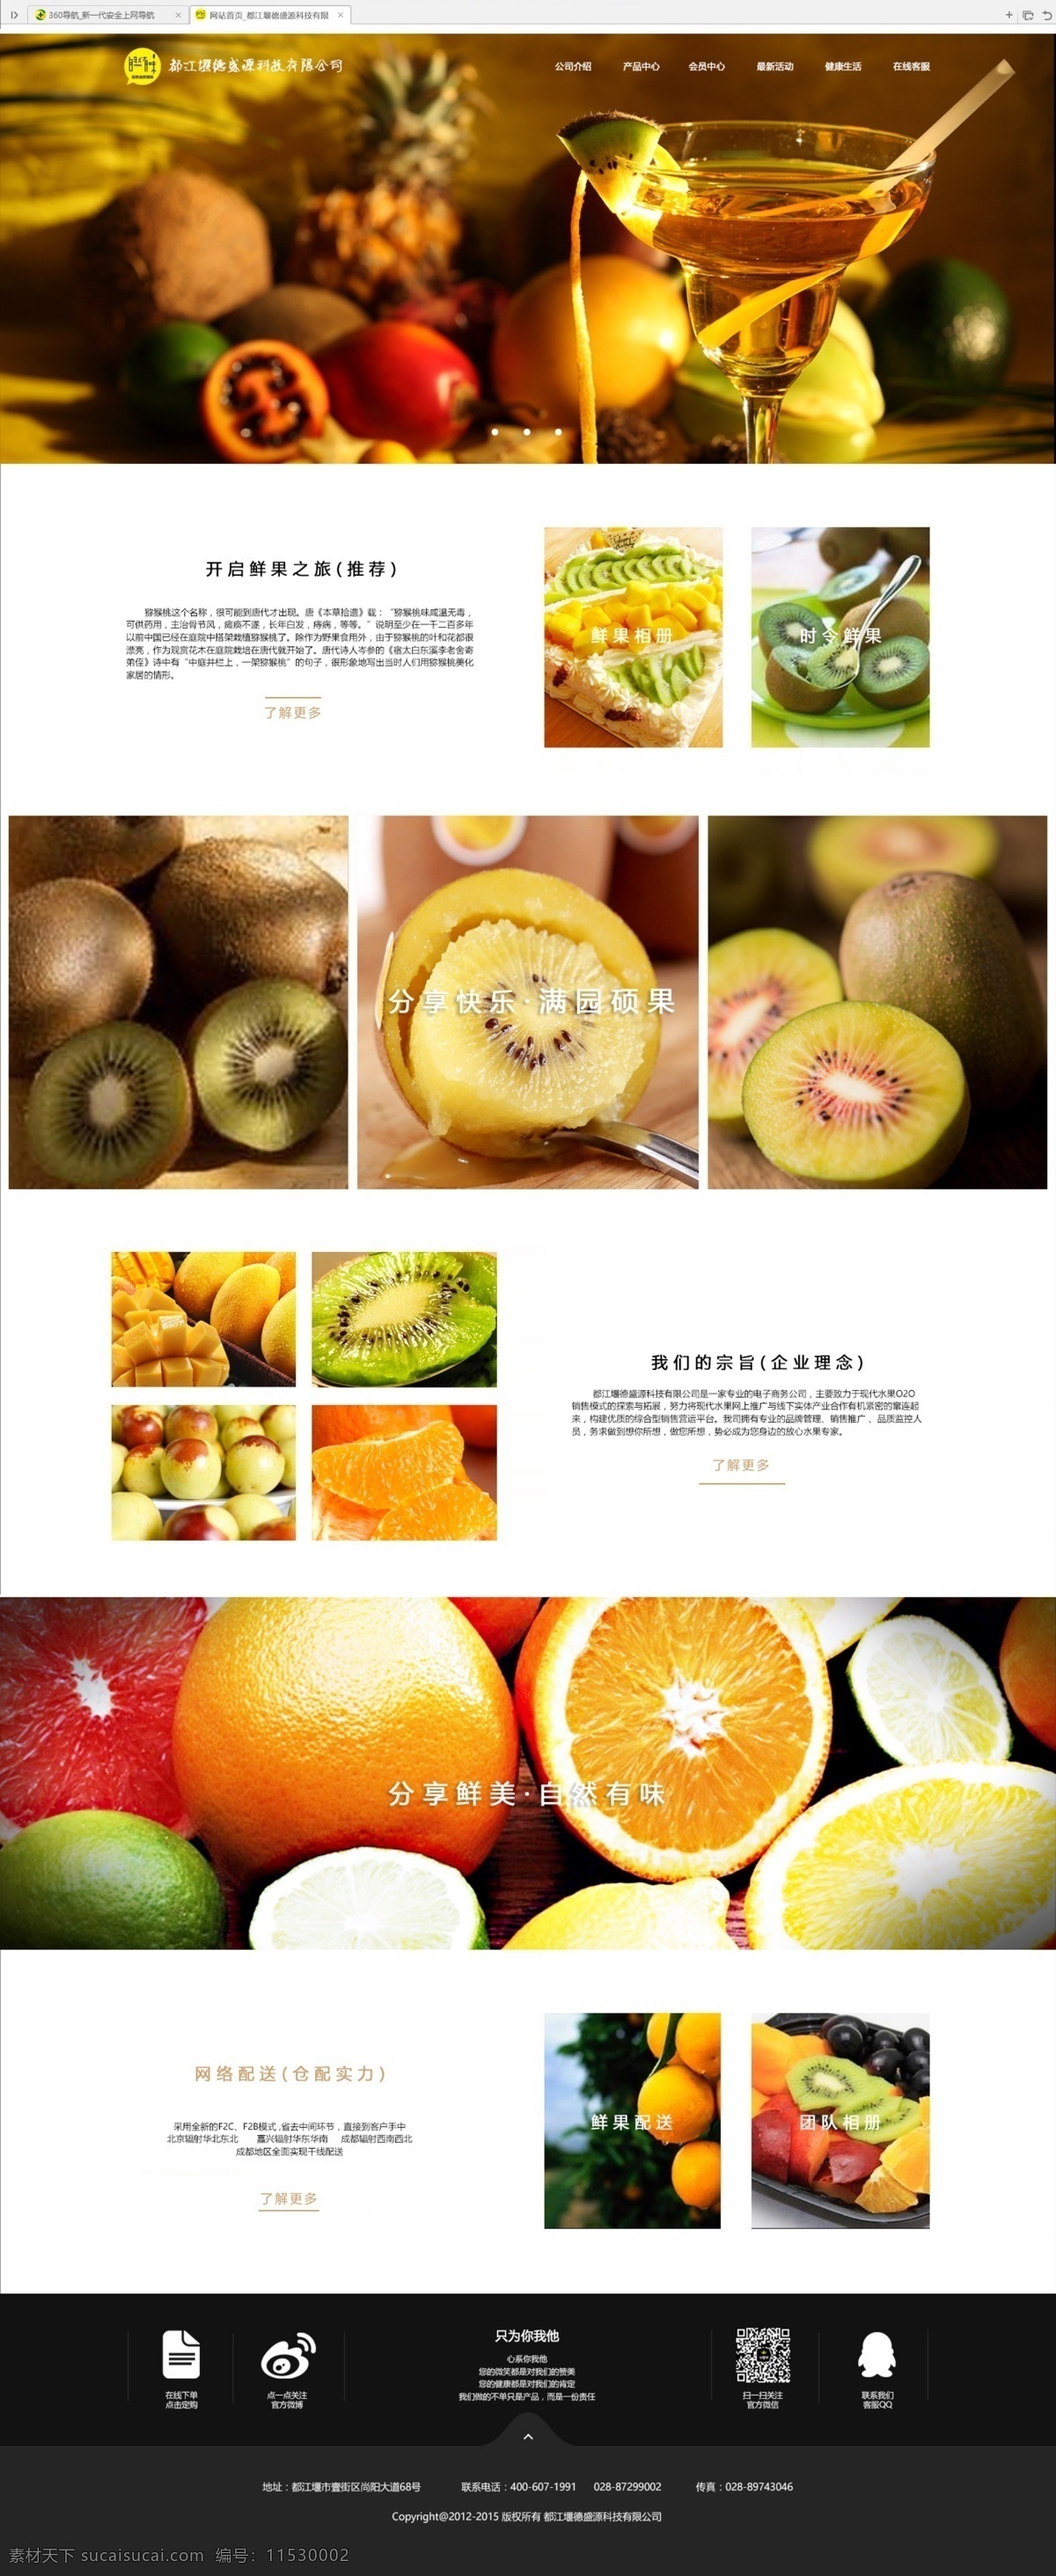 水果网站 创意水果网站 大气简洁网站 多图展示网站 展示型网站 白色